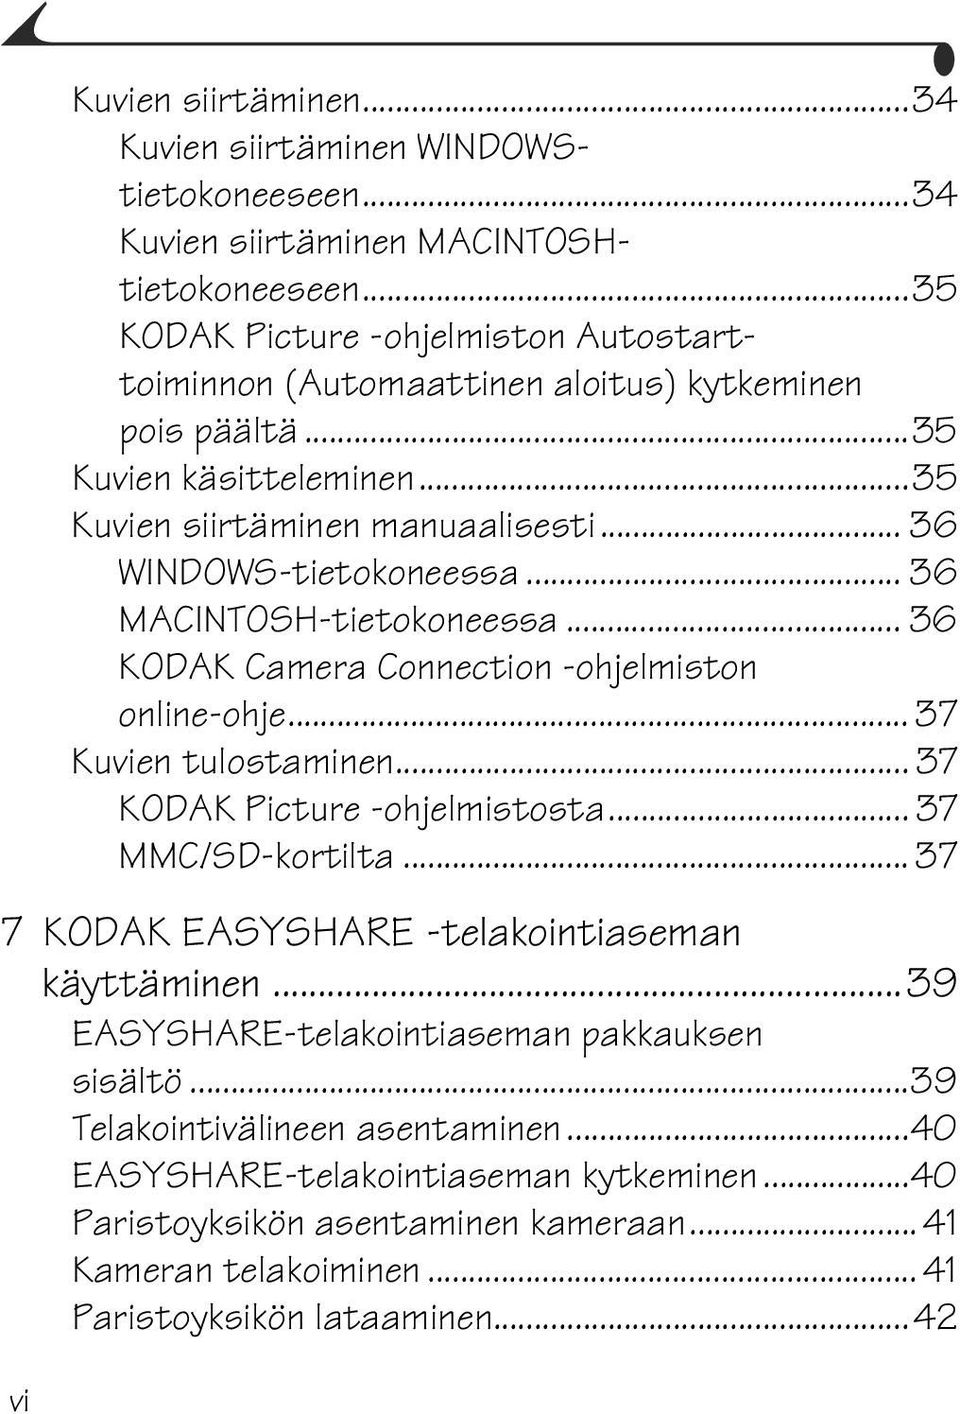 .. 36 MACINTOSH-tietokoneessa... 36 KODAK Camera Connection -ohjelmiston online-ohje... 37 Kuvien tulostaminen... 37 KODAK Picture -ohjelmistosta... 37 MMC/SD-kortilta.